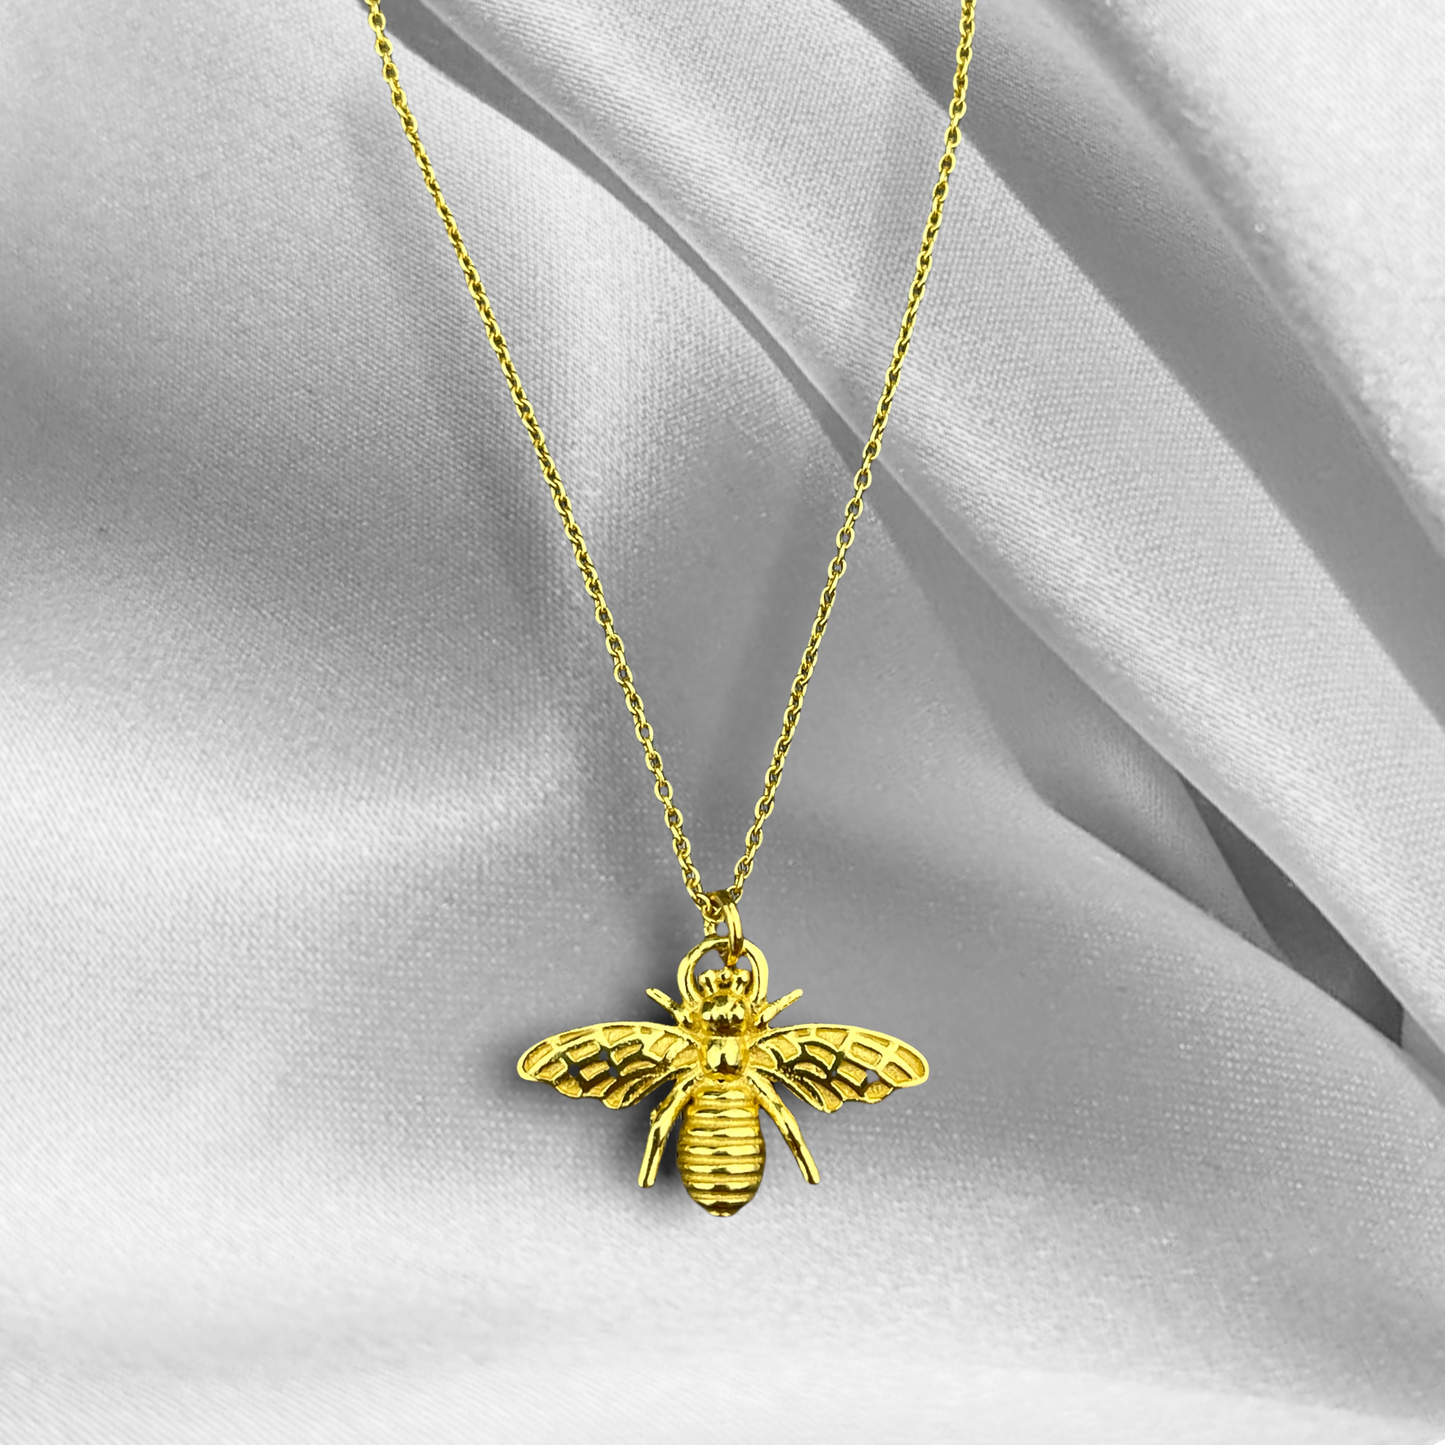 Chaîne dorée sterling de Golden Bee 925 - idée de cadeau pour les abeilles de travail dur - K925-59